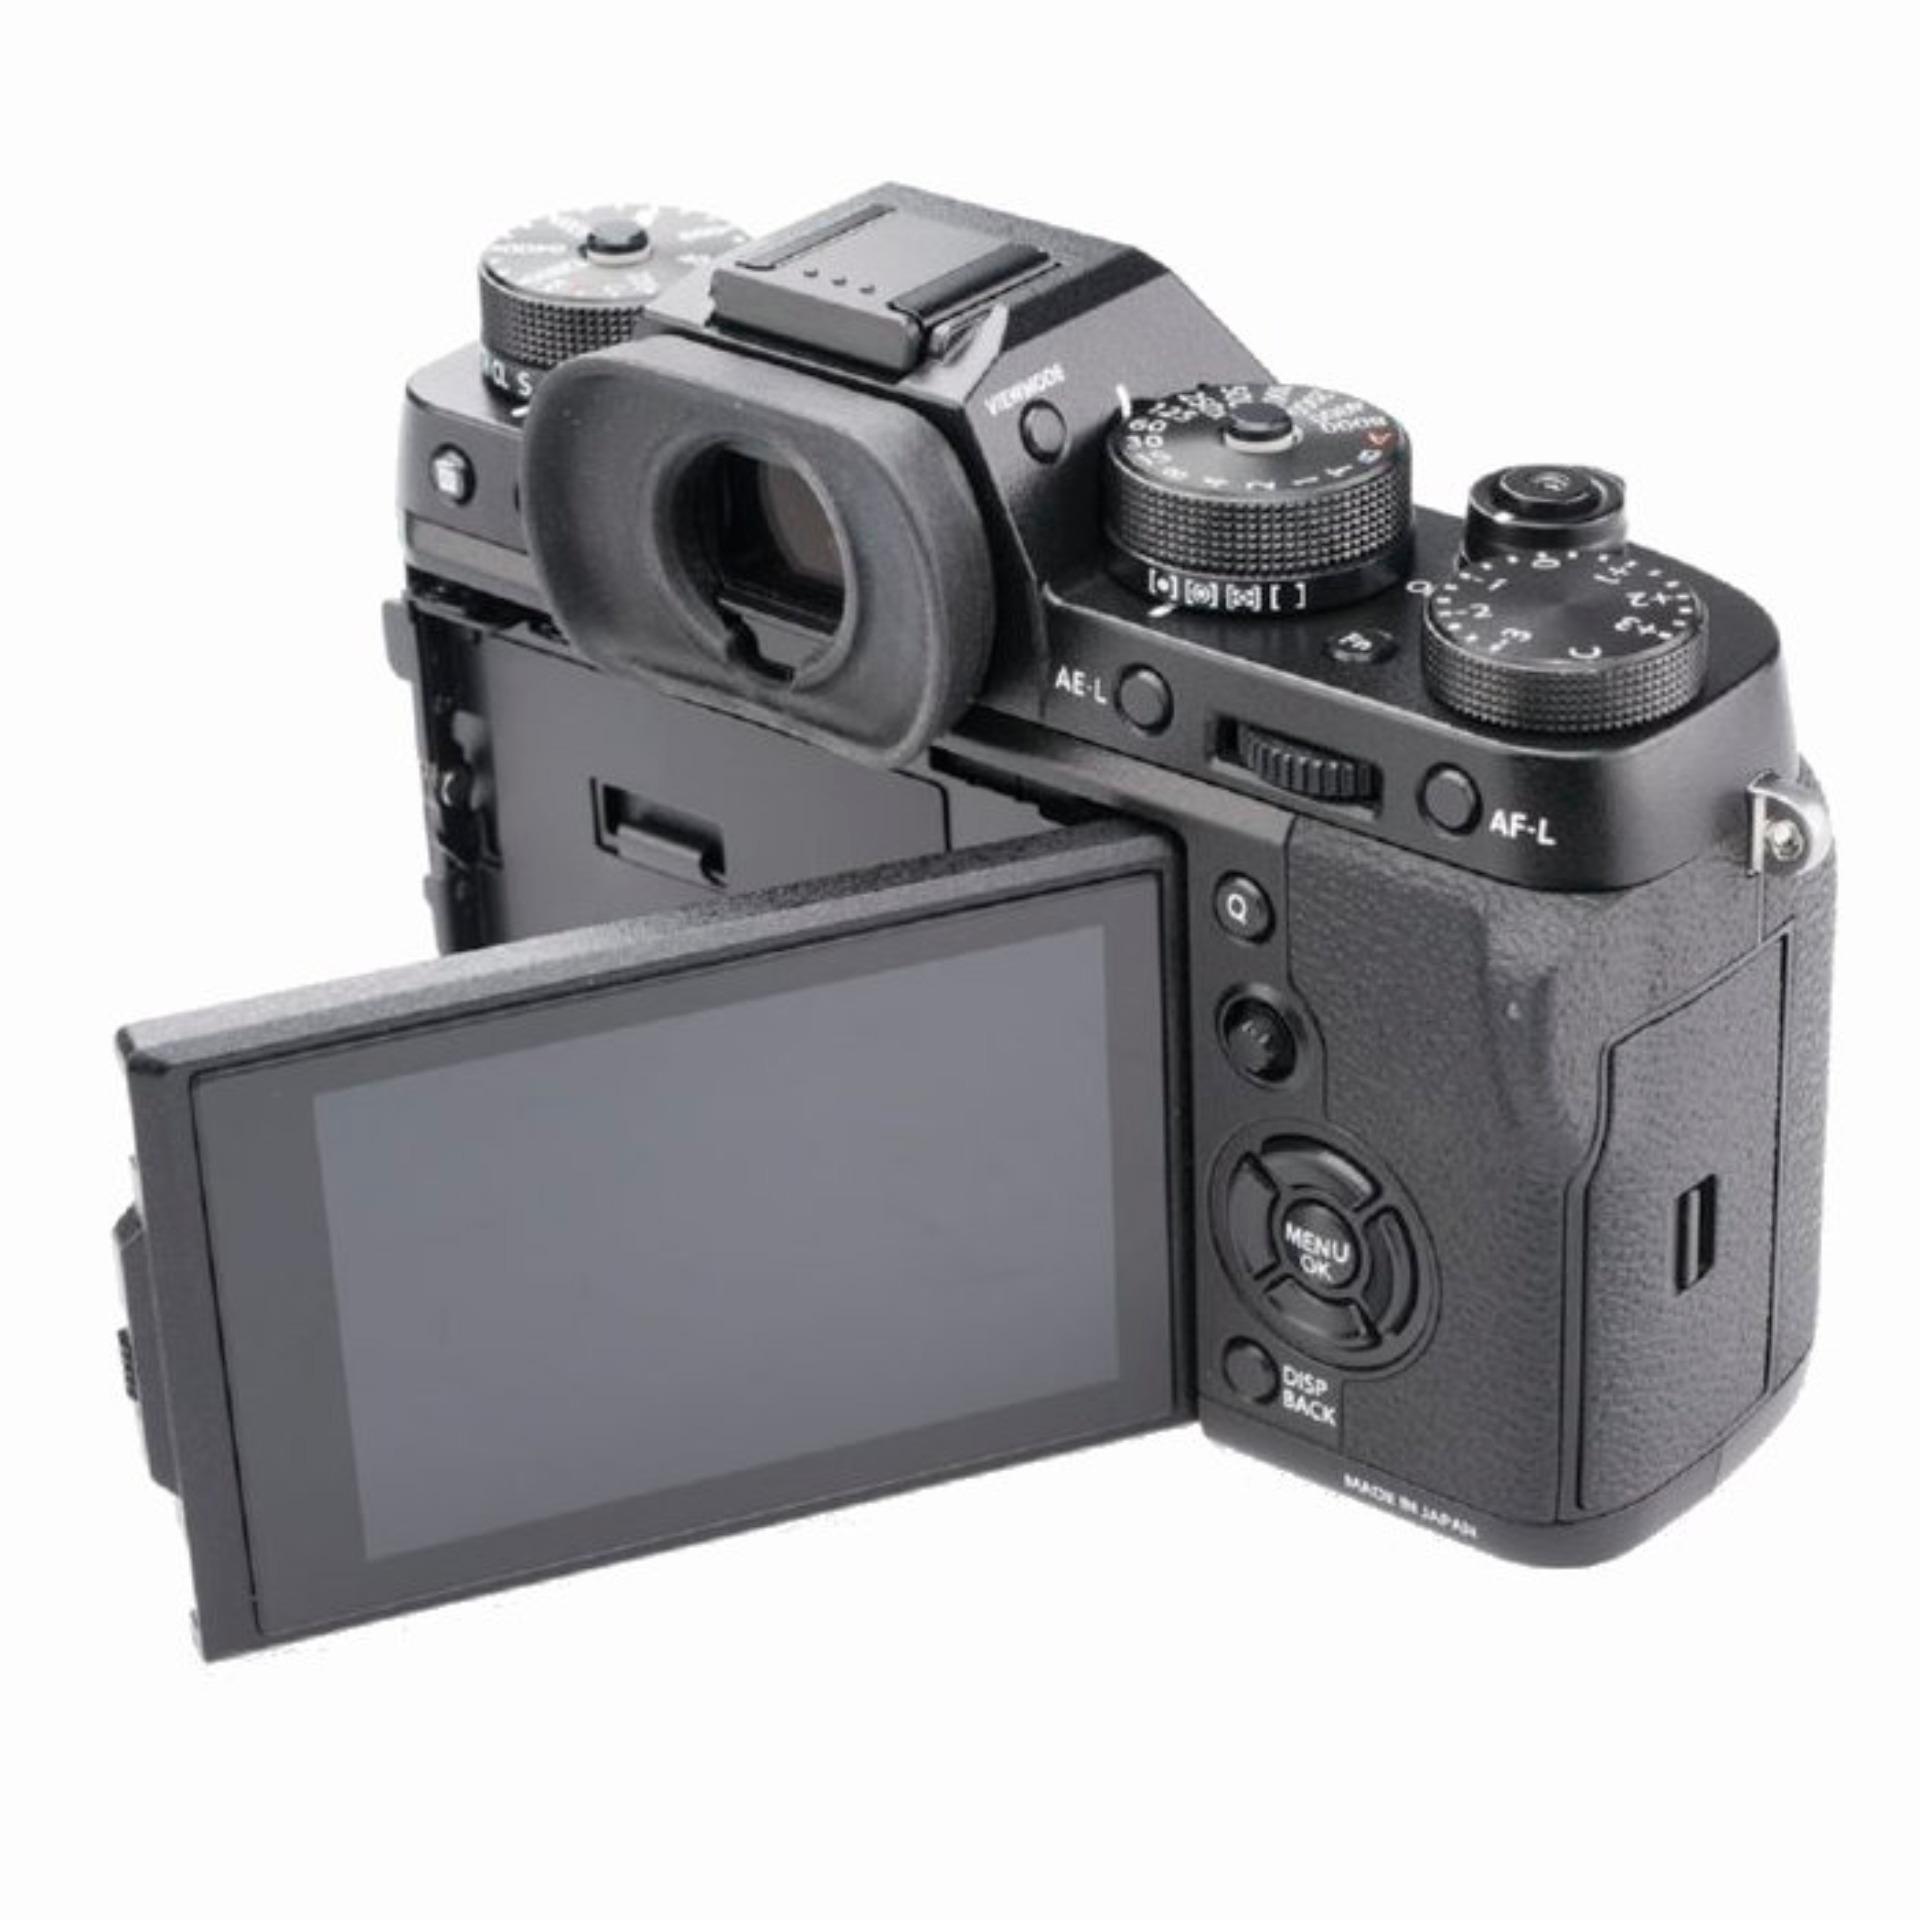 Fujifilm X-T2 Camera Body Only (No Warranty)